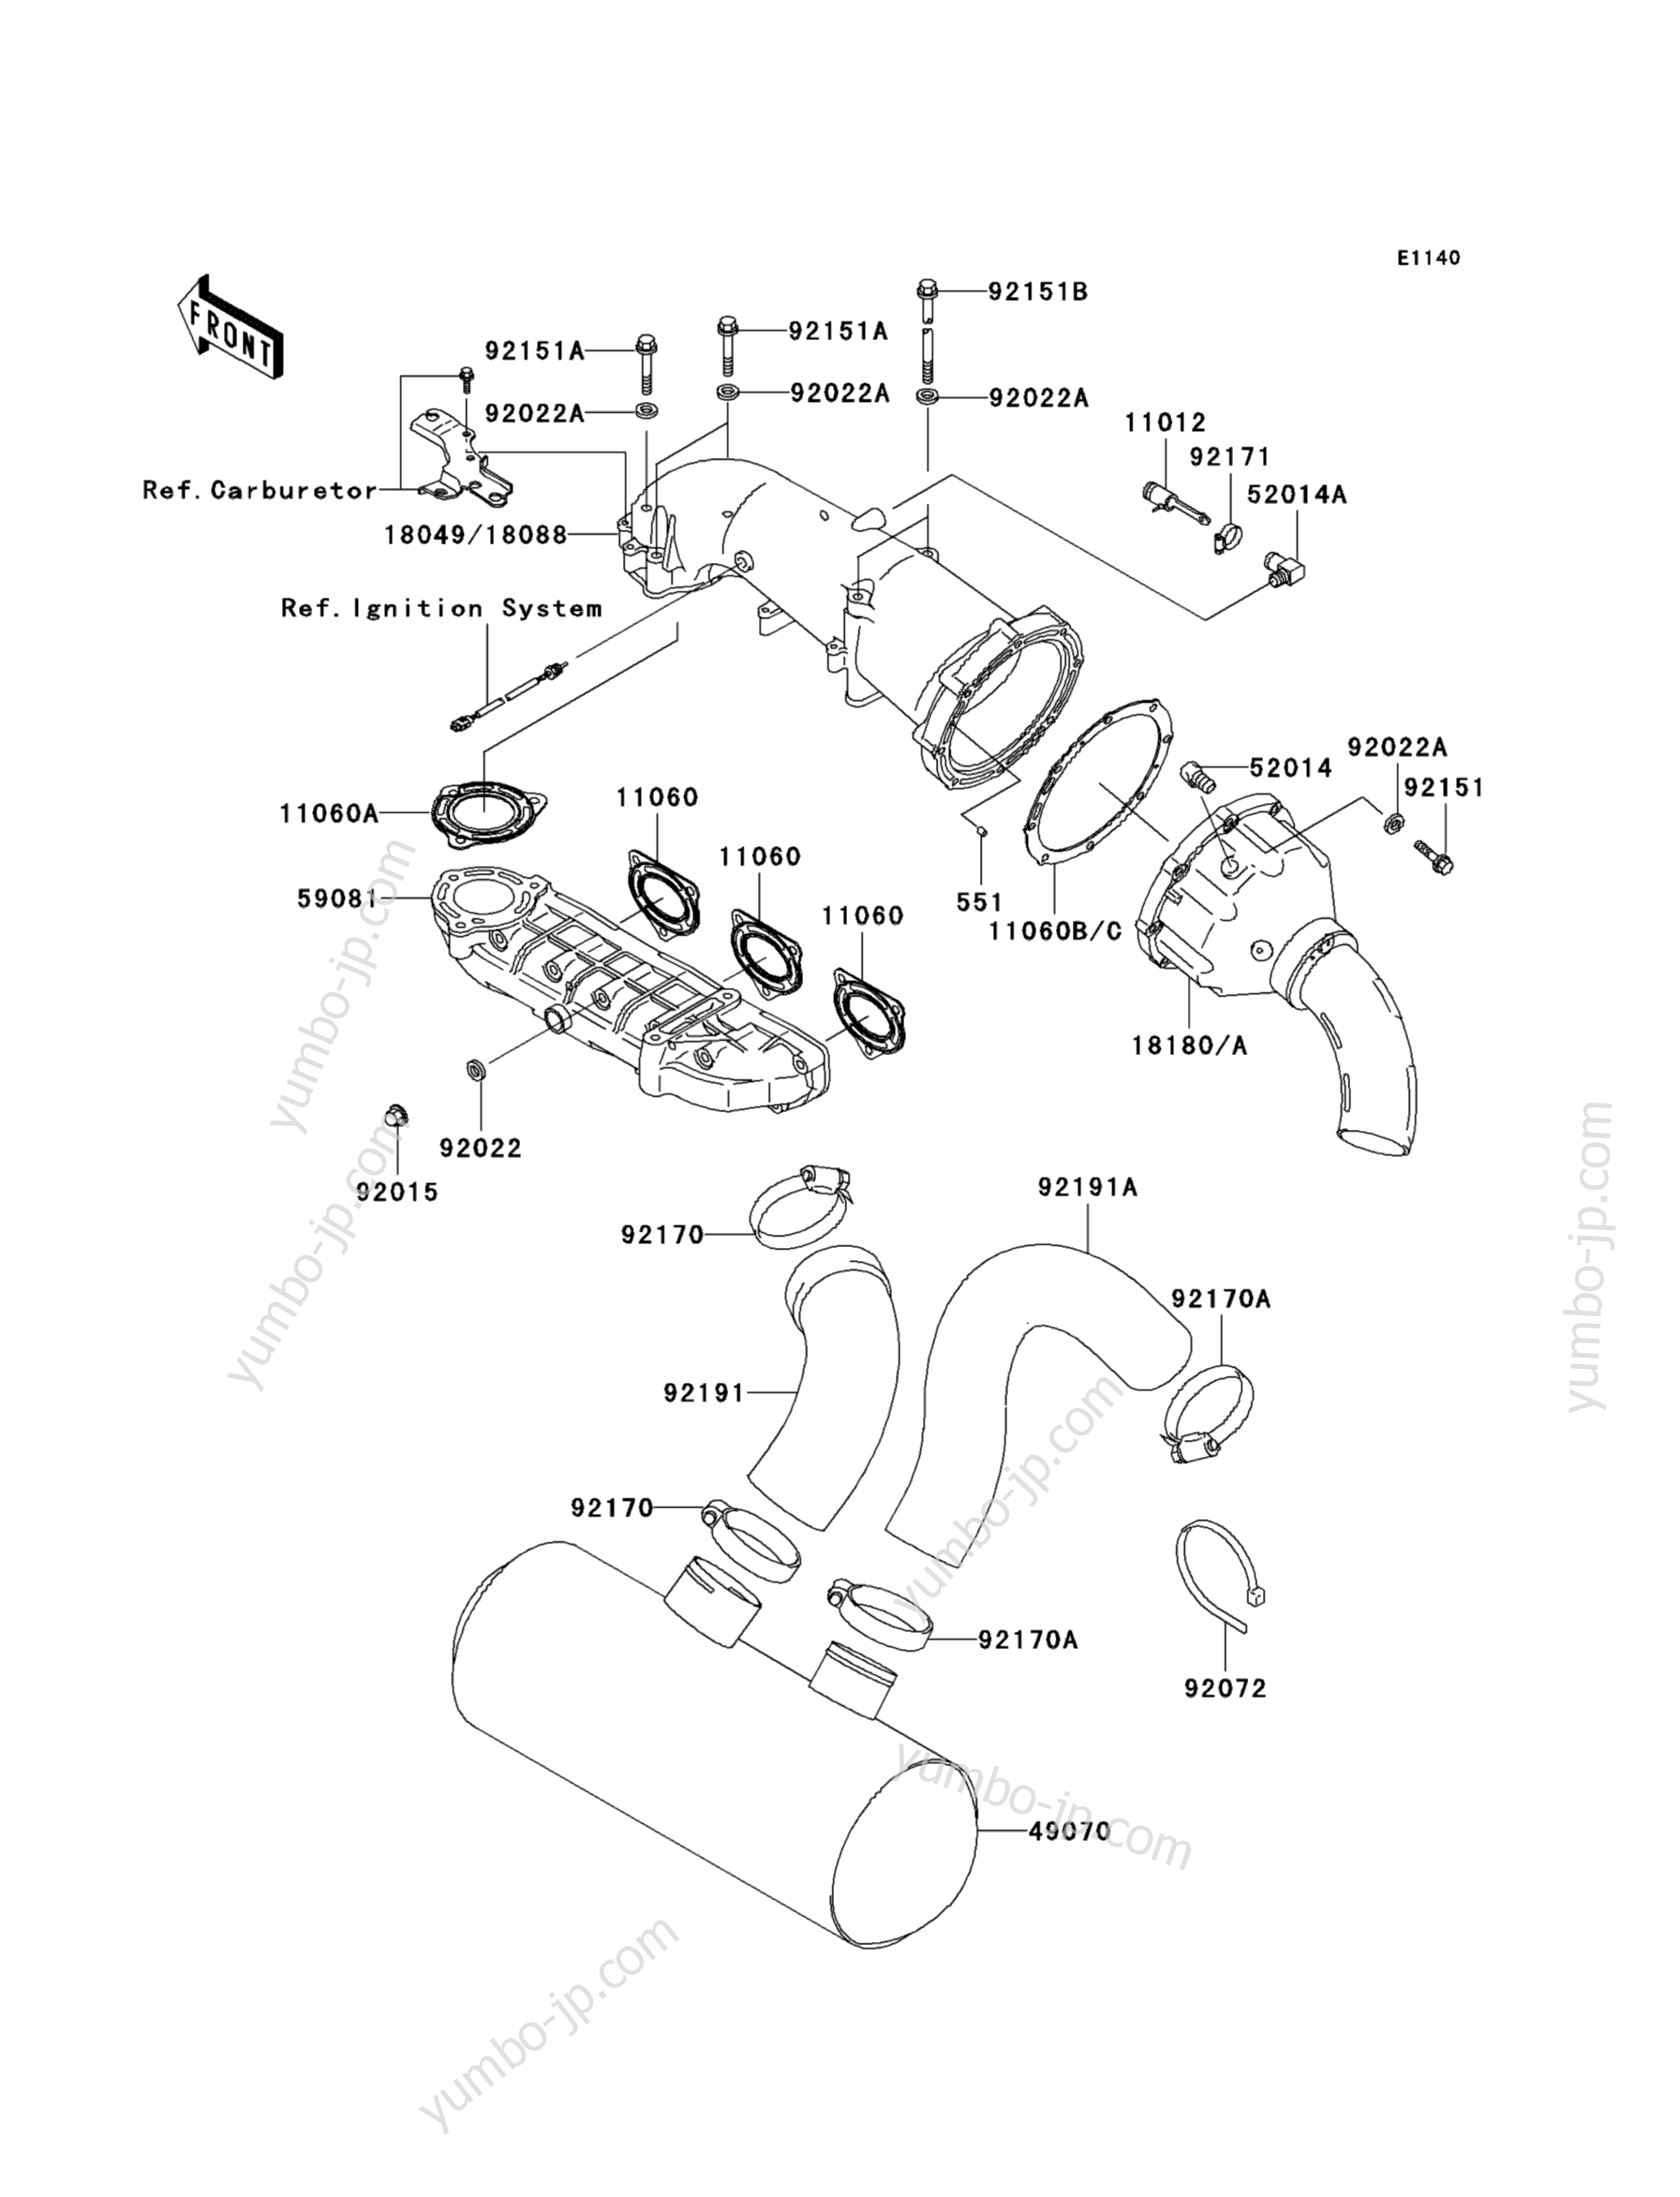 Muffler(s) для гидроциклов KAWASAKI JET SKI ULTRA 150 (JH1200-A4) 2002 г.